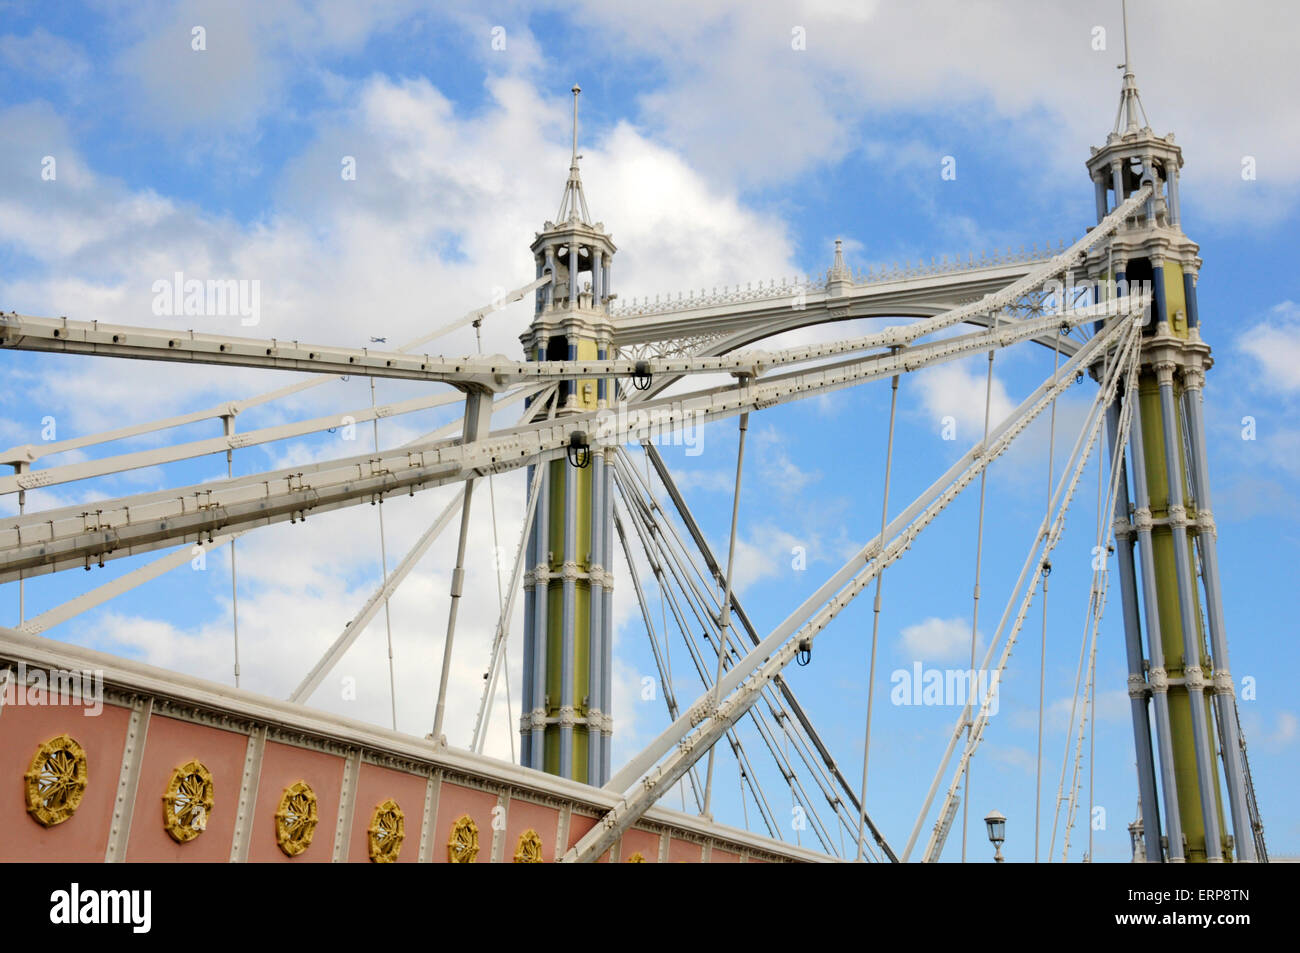 Albert Puente sobre el río Támesis, Londres, Inglaterra. Foto de stock